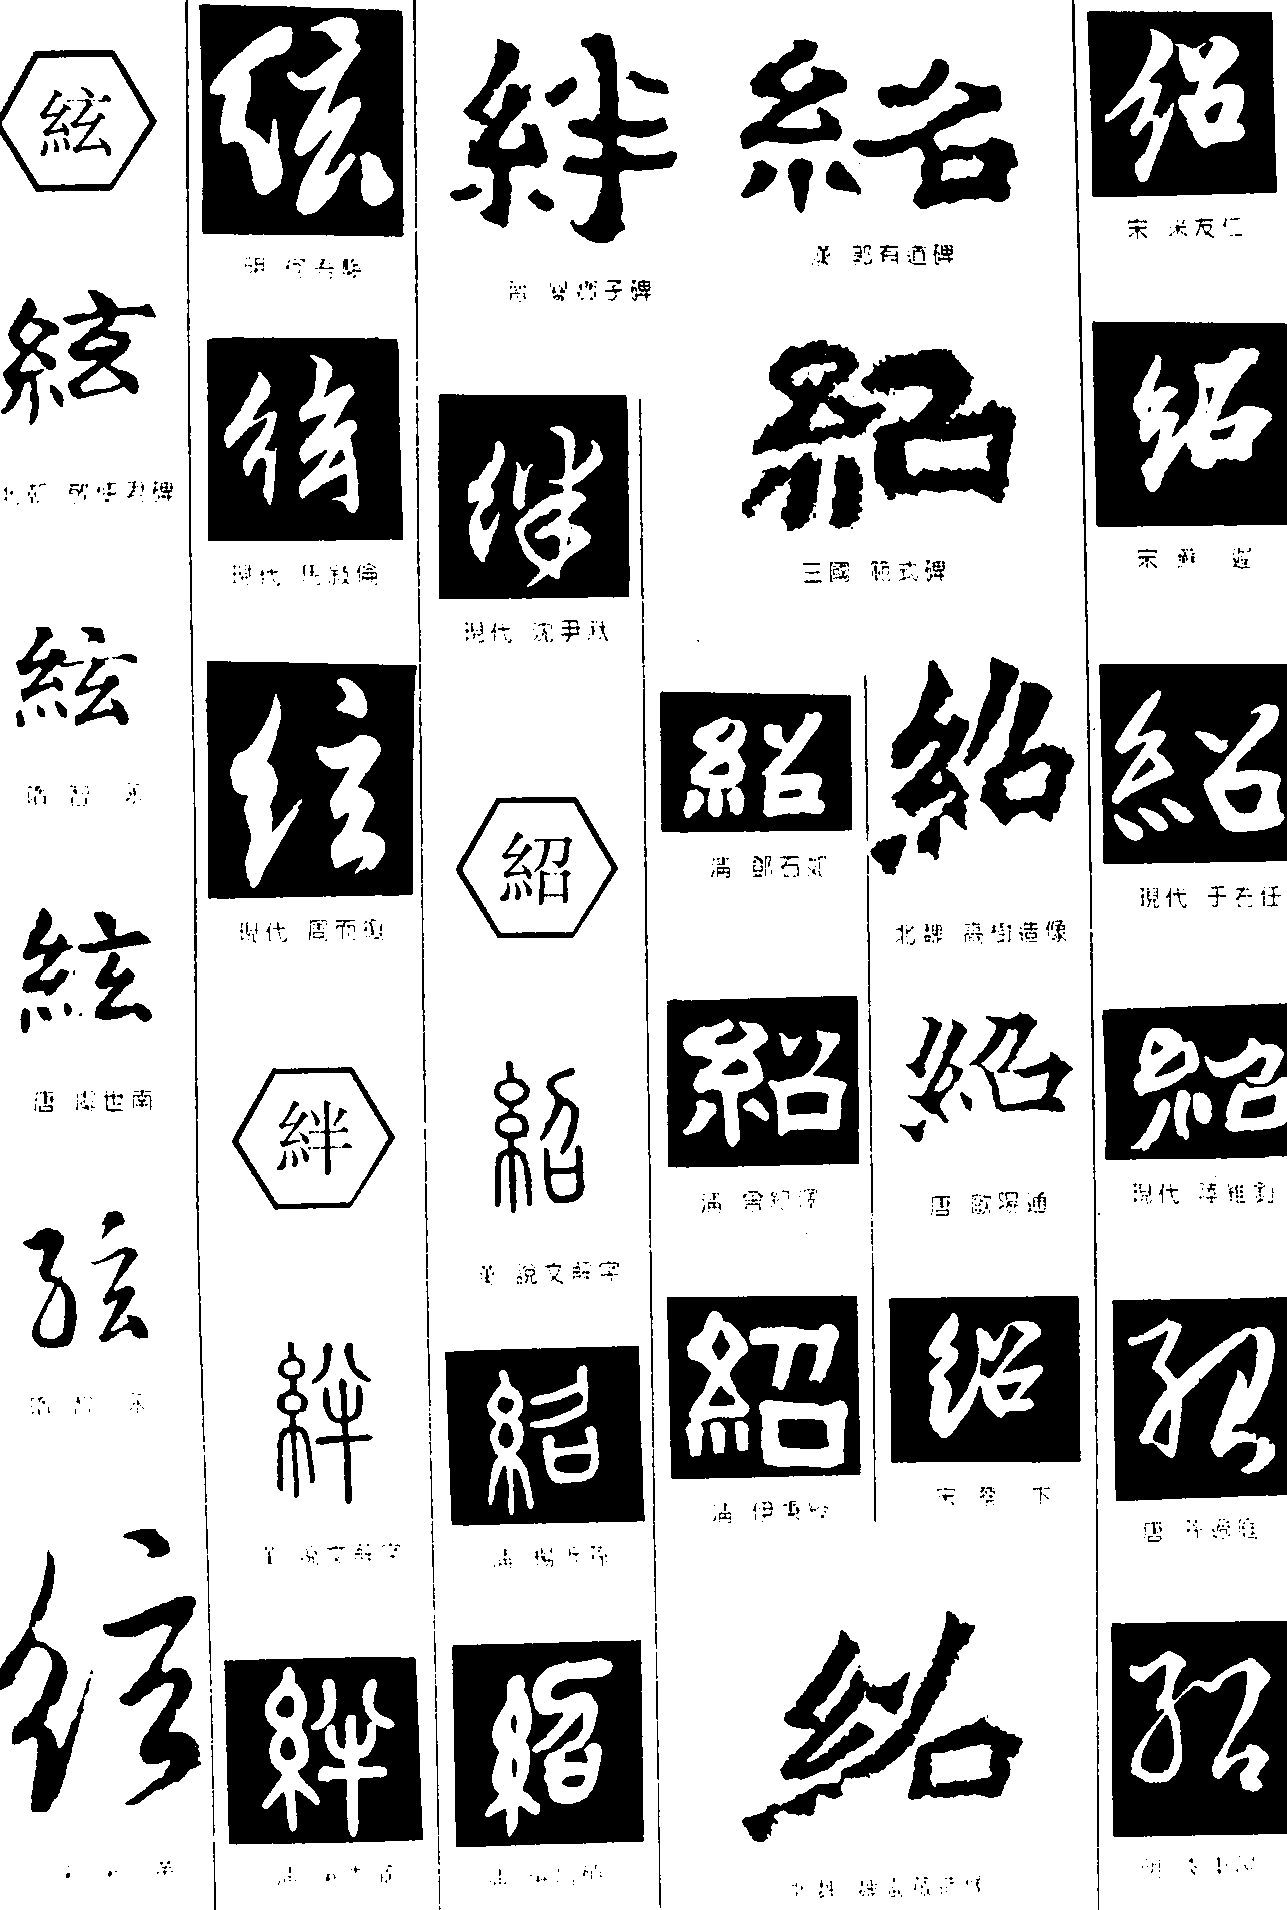 絃绊绍 艺术字 毛笔字 书法字 繁体 标志设计 